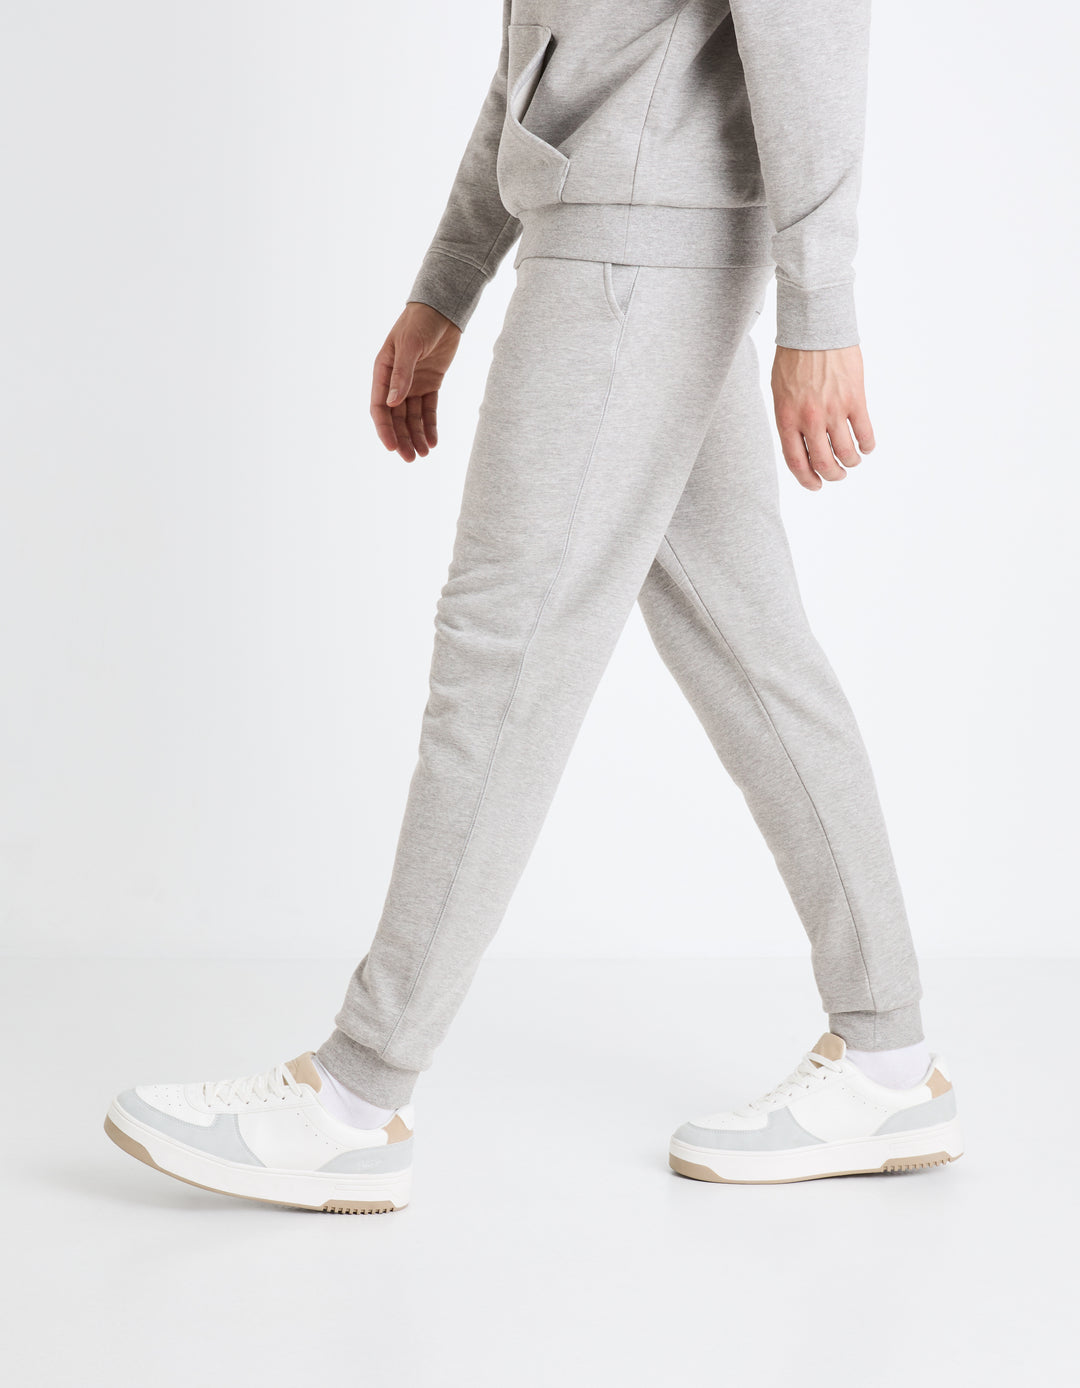 100% cotton jogging pants